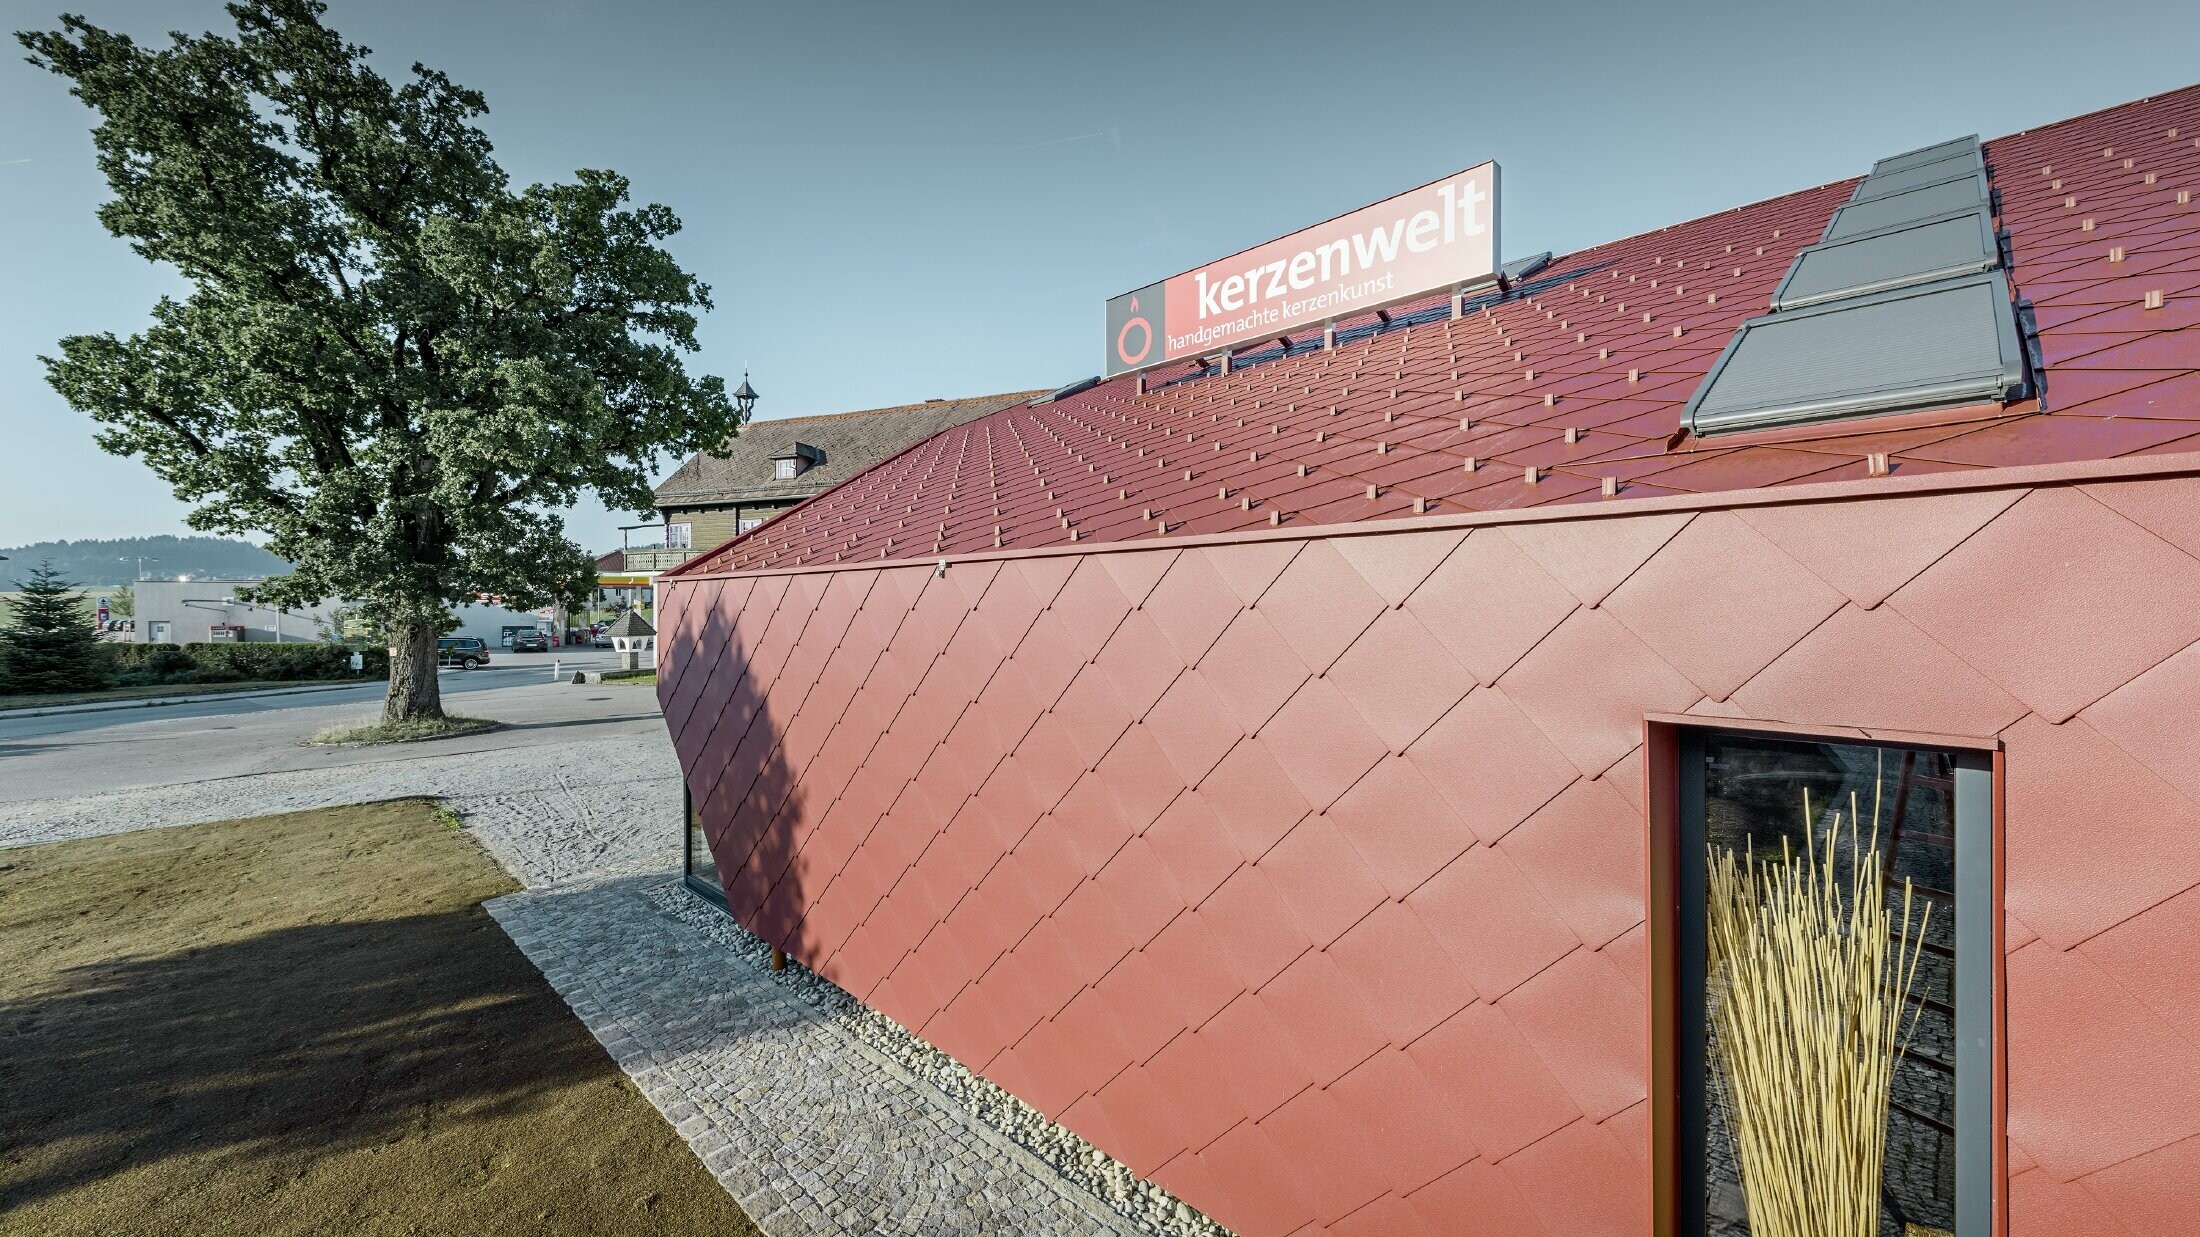 Svjećarna Kerzenwelt u Schläglu u cijelosti je nanovo pokrivena PREFA rombom. Krovni pokrivač i fasadna obloga izvedeni su s rombom 44 × 44 u oksid crvenoj.